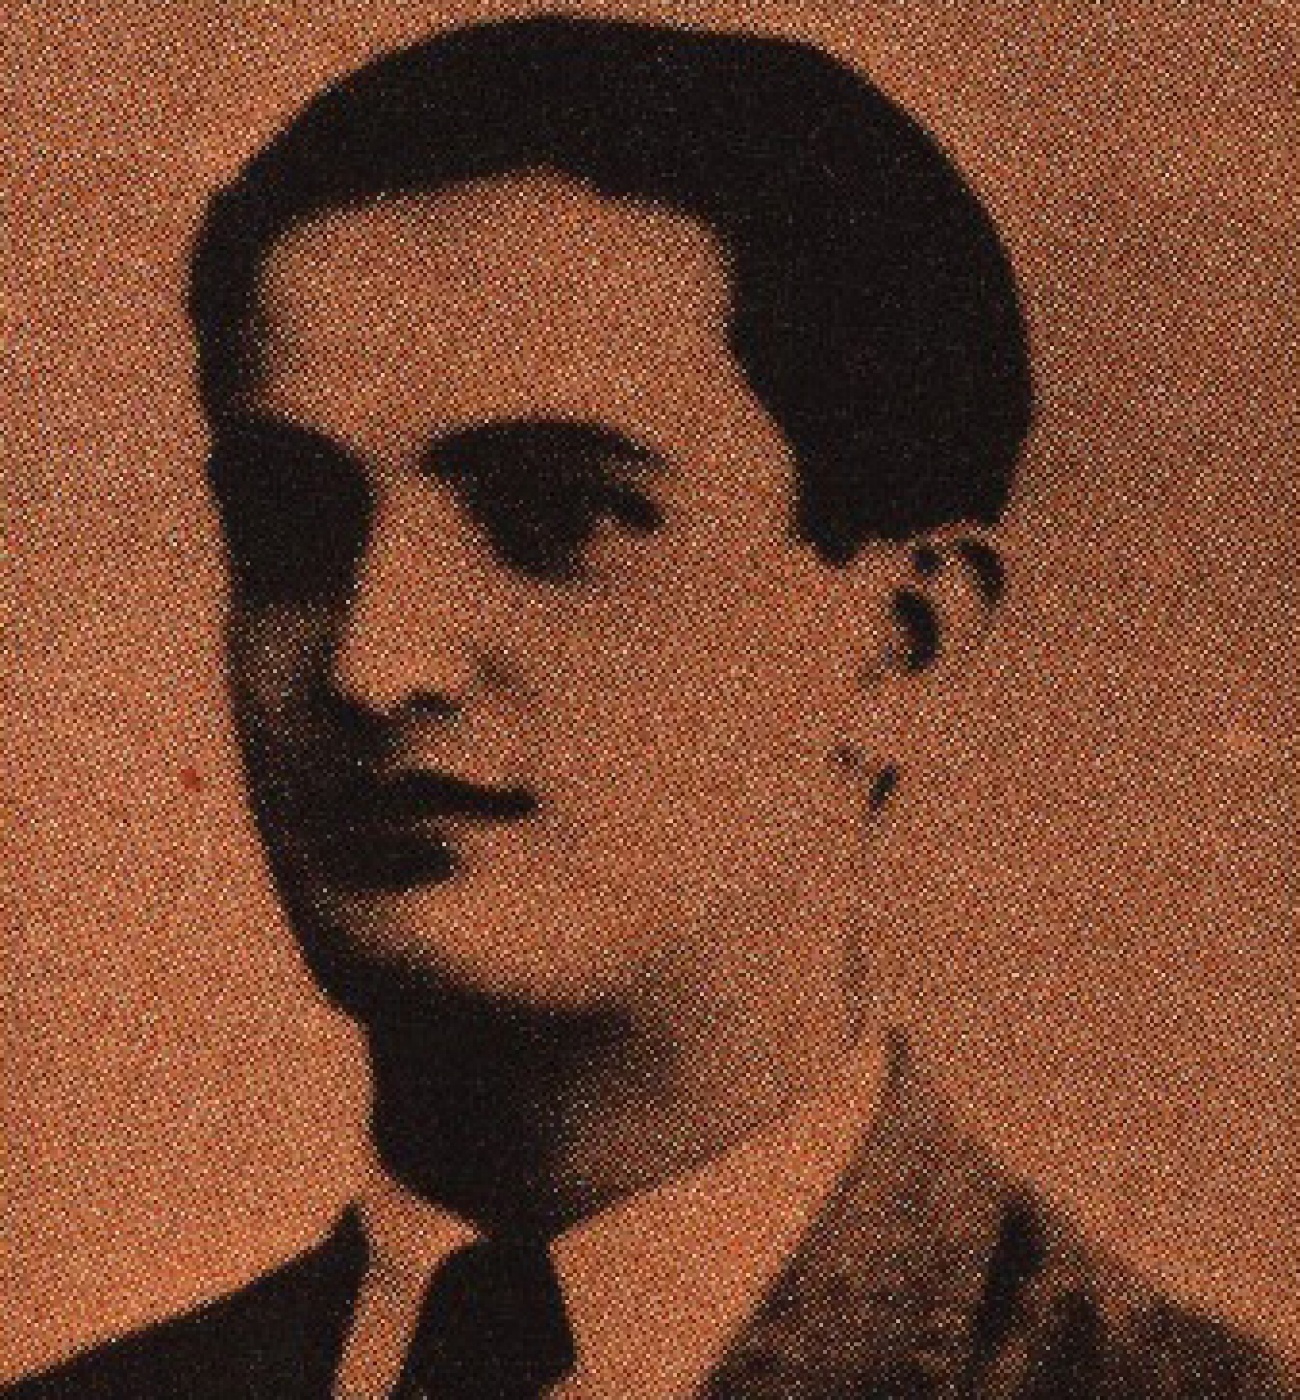 Octávio Pato pouco antes de passar à clandestinidade, em 1947